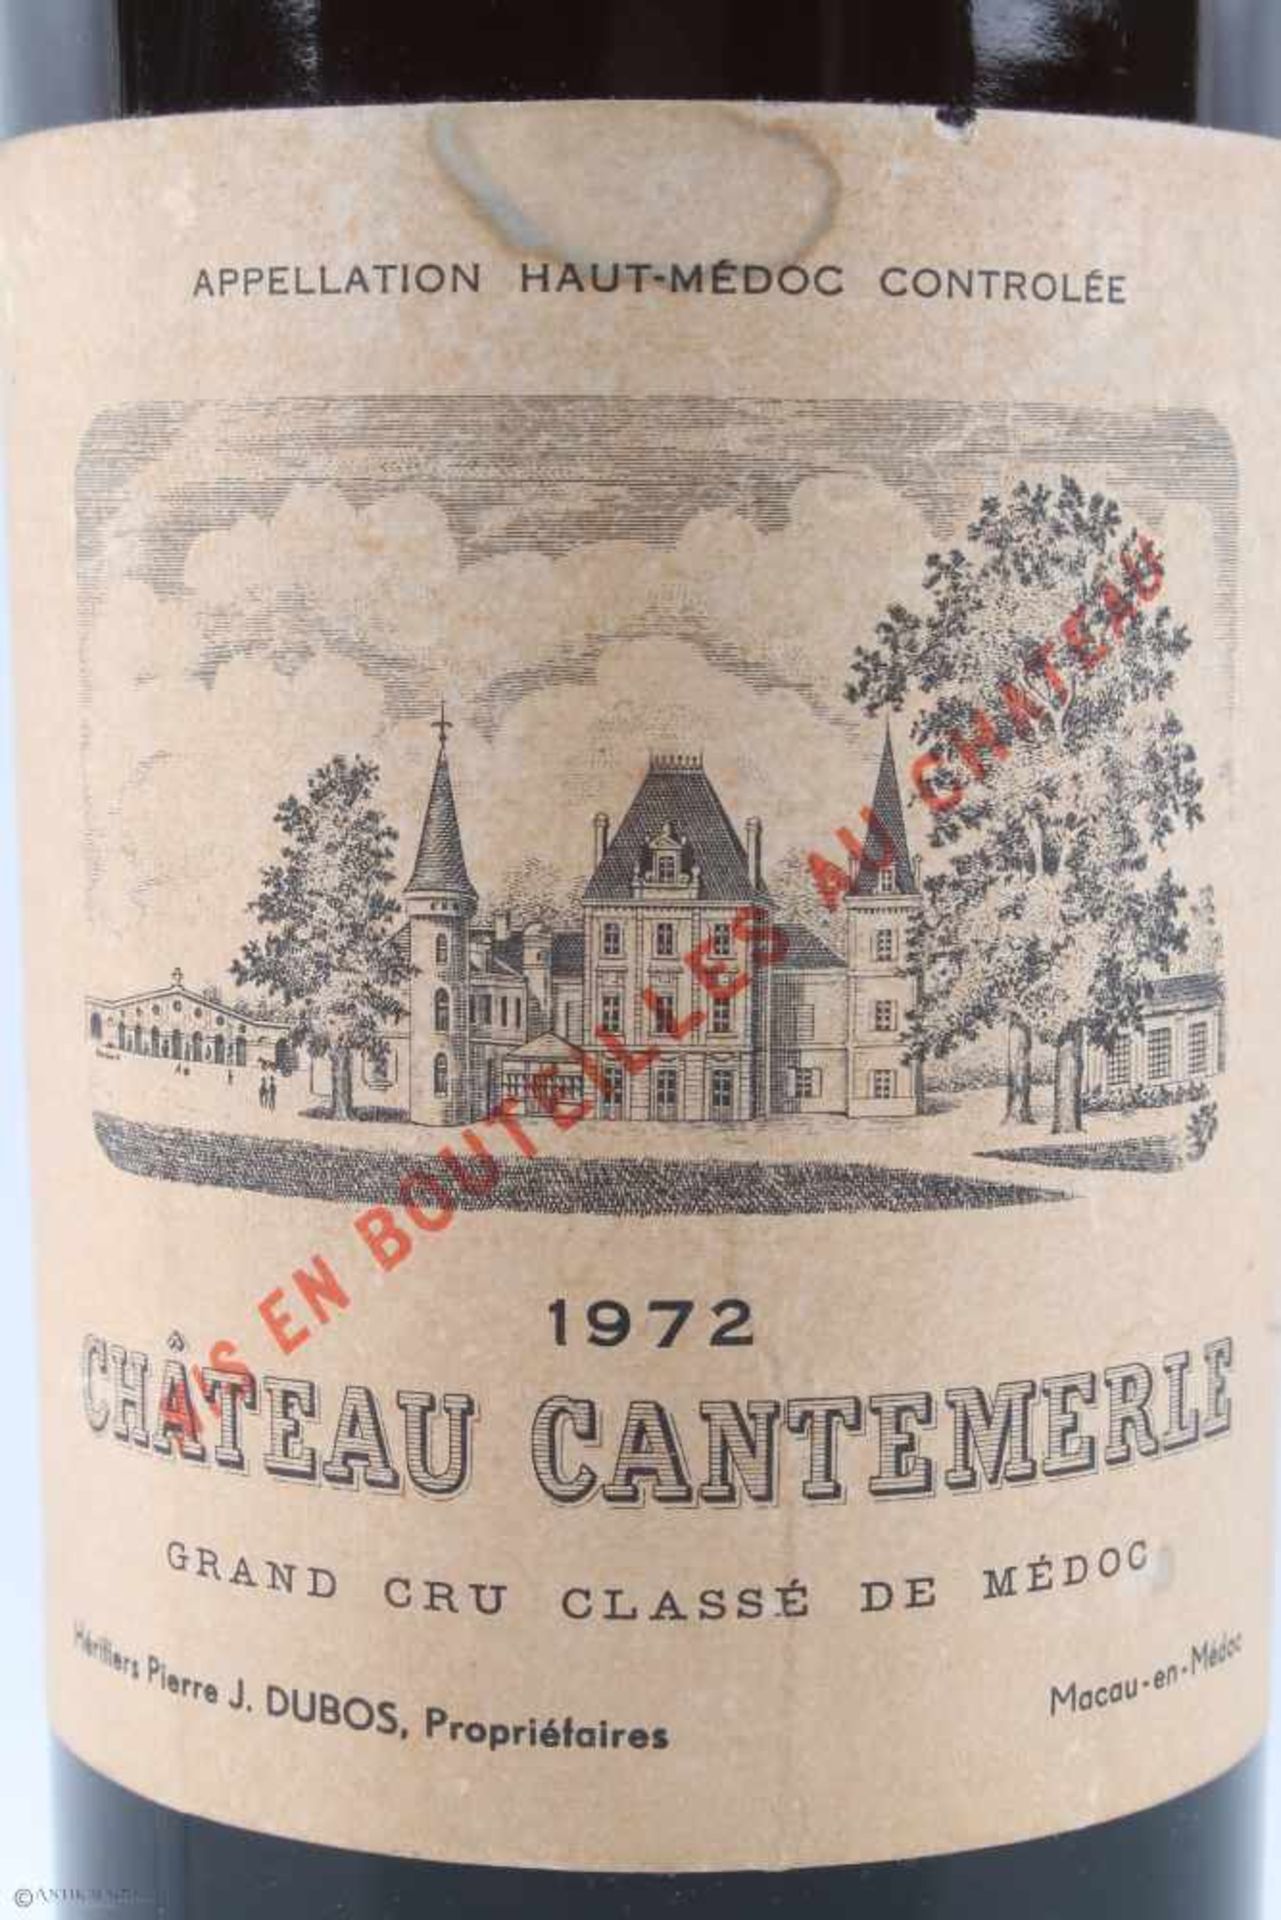 1972 Chateau Cantemerle Magnum 1,5 Liter Rotwein, red wine, - Bild 3 aus 4